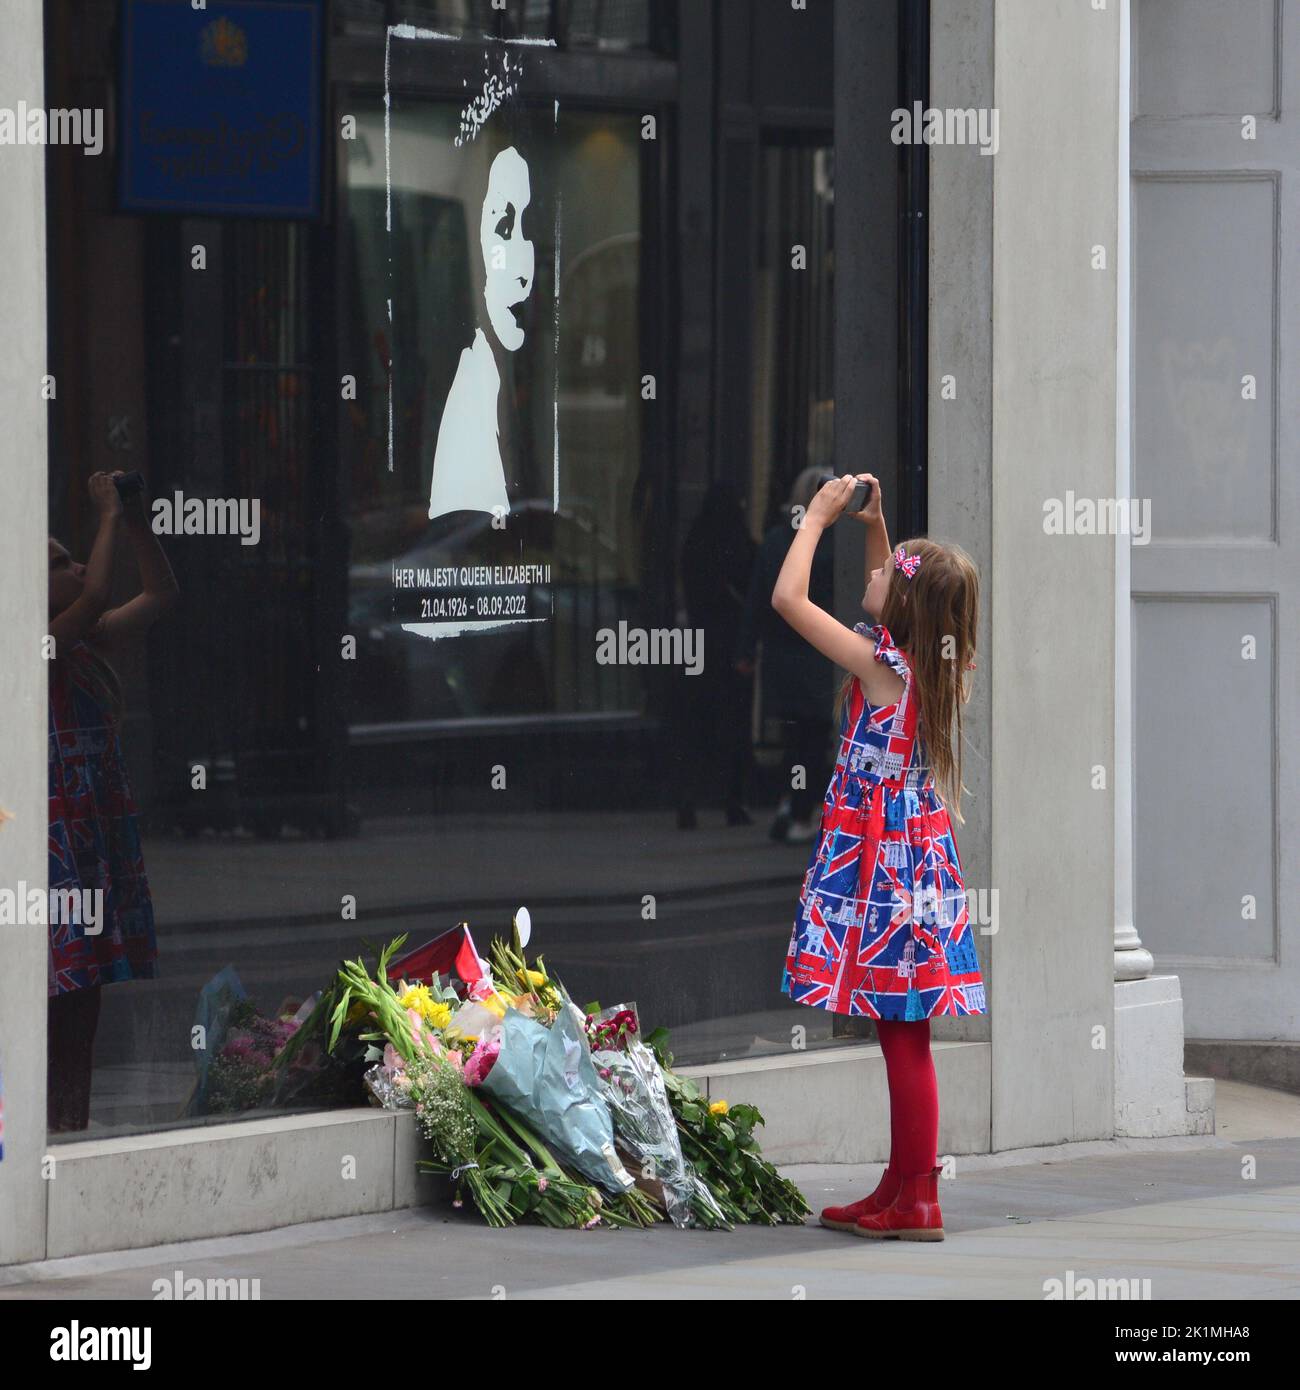 Staatsbegräbnis Ihrer Majestät Königin Elizabeth II., London, Großbritannien, Montag, 19.. September 2022. Ein junges Mädchen in einem Kleid von Union Jack, das in einem Schaufenster in der Old Bond Street ein Erinnerungsfoto von Ihrer Majestät der Königin fotografiert. Stockfoto